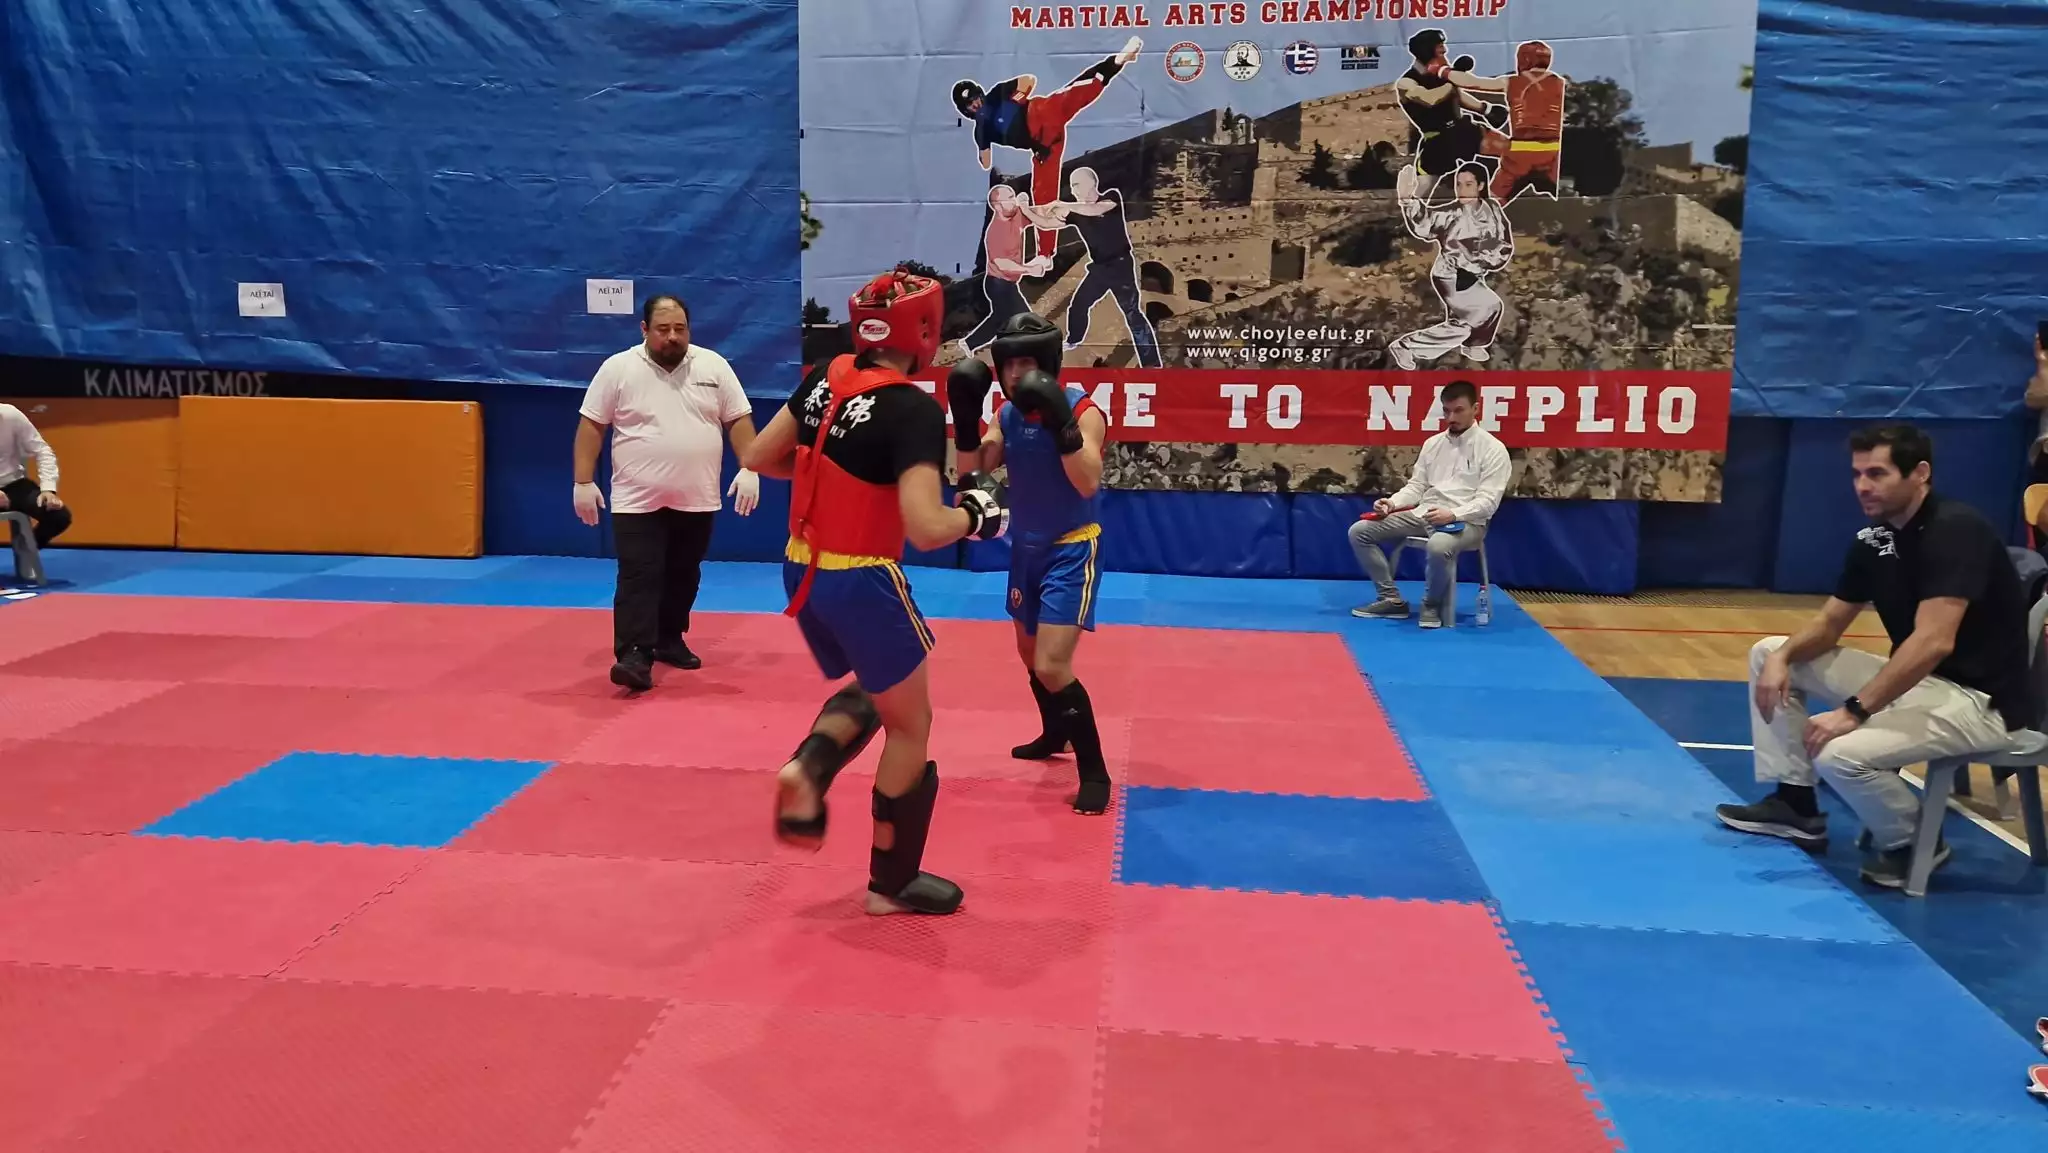 Ναύπλιο: Ανακοινώθηκε το 16ο Παλαμήδειο Πρωτάθλημα Μαχητικών τεχνών